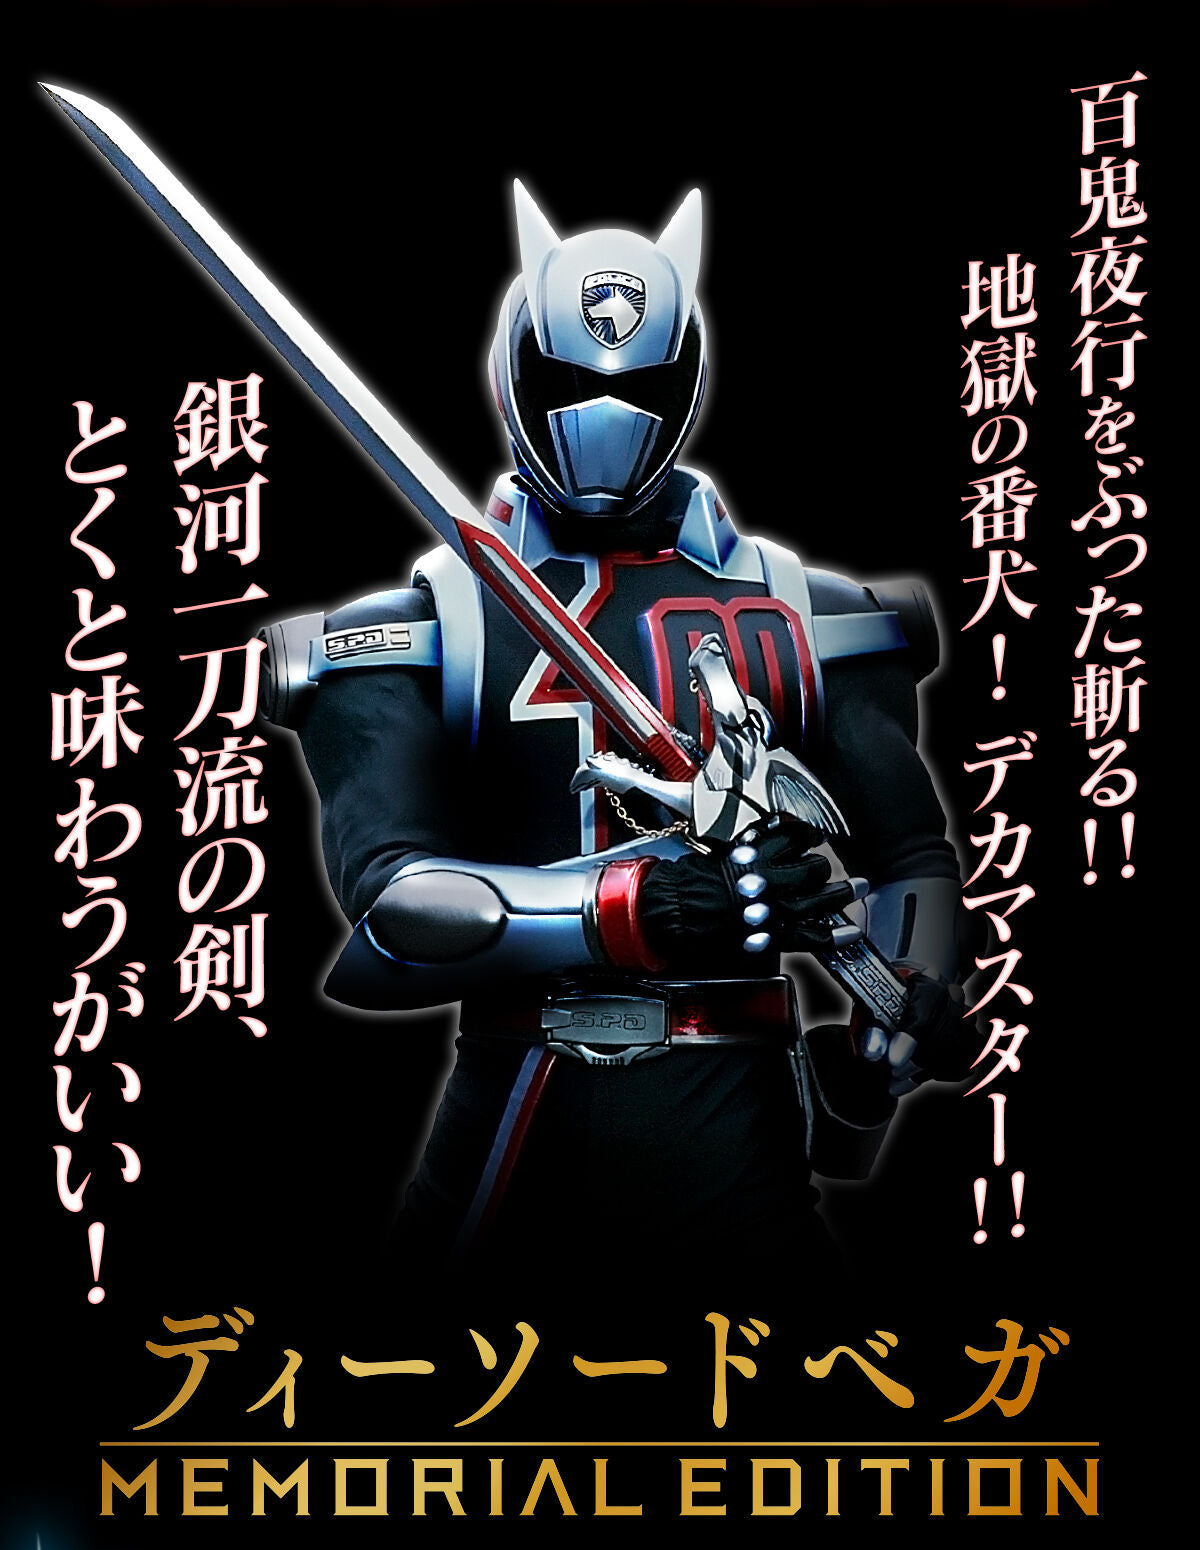 Memorial Edition - Tokusou Sentai Dekaranger - D-Sword Vega